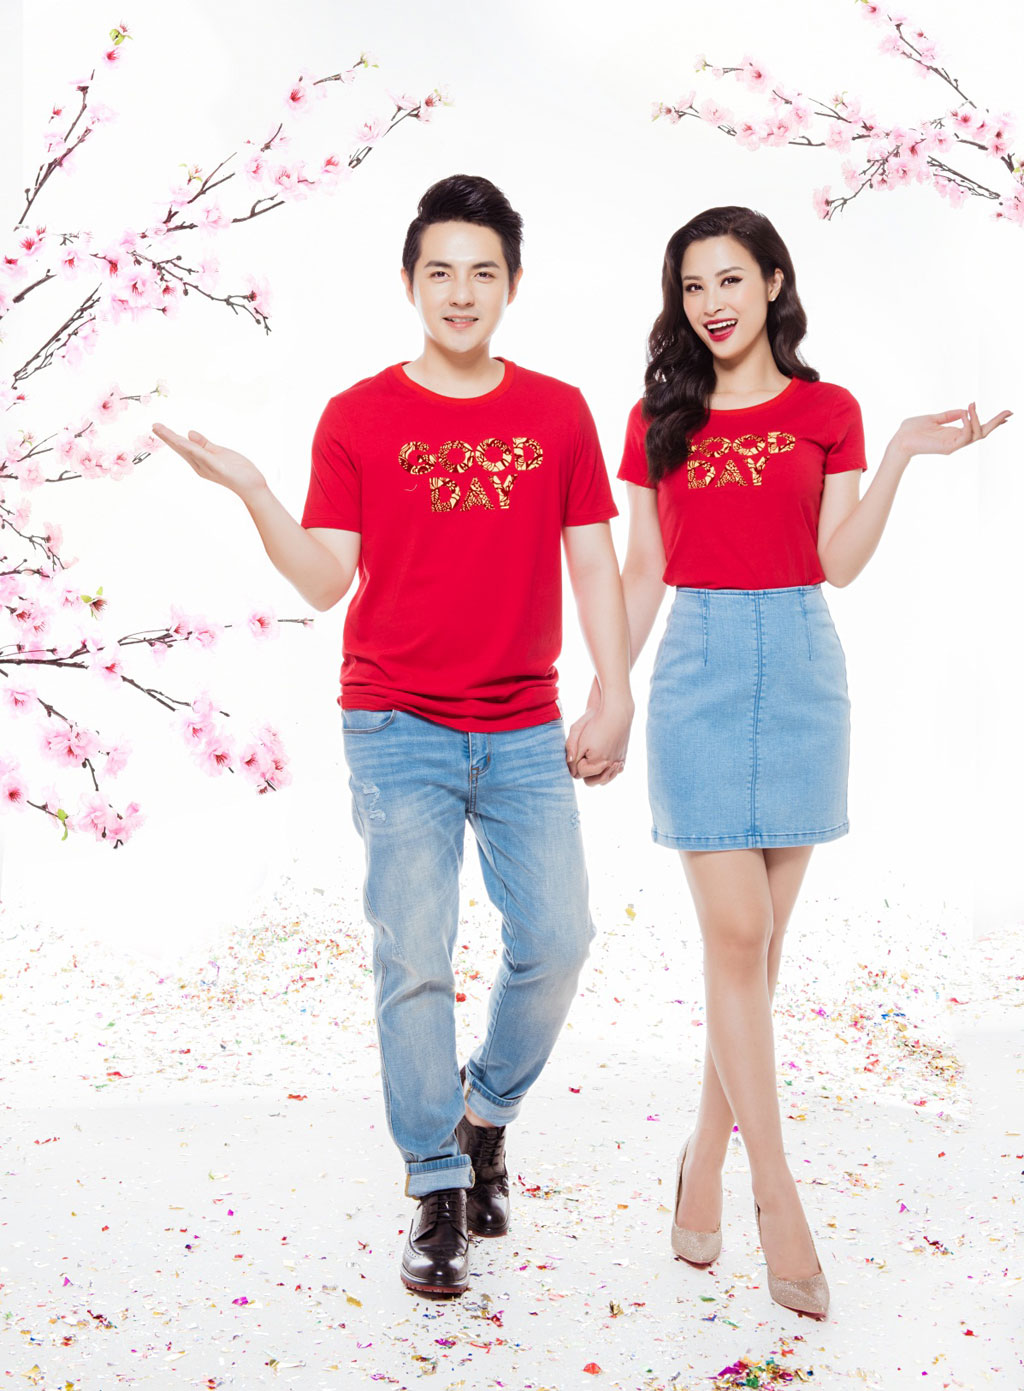 Điểm danh những cặp đôi đáng ngưỡng mộ của showbiz Việt trong ngày Valentine1